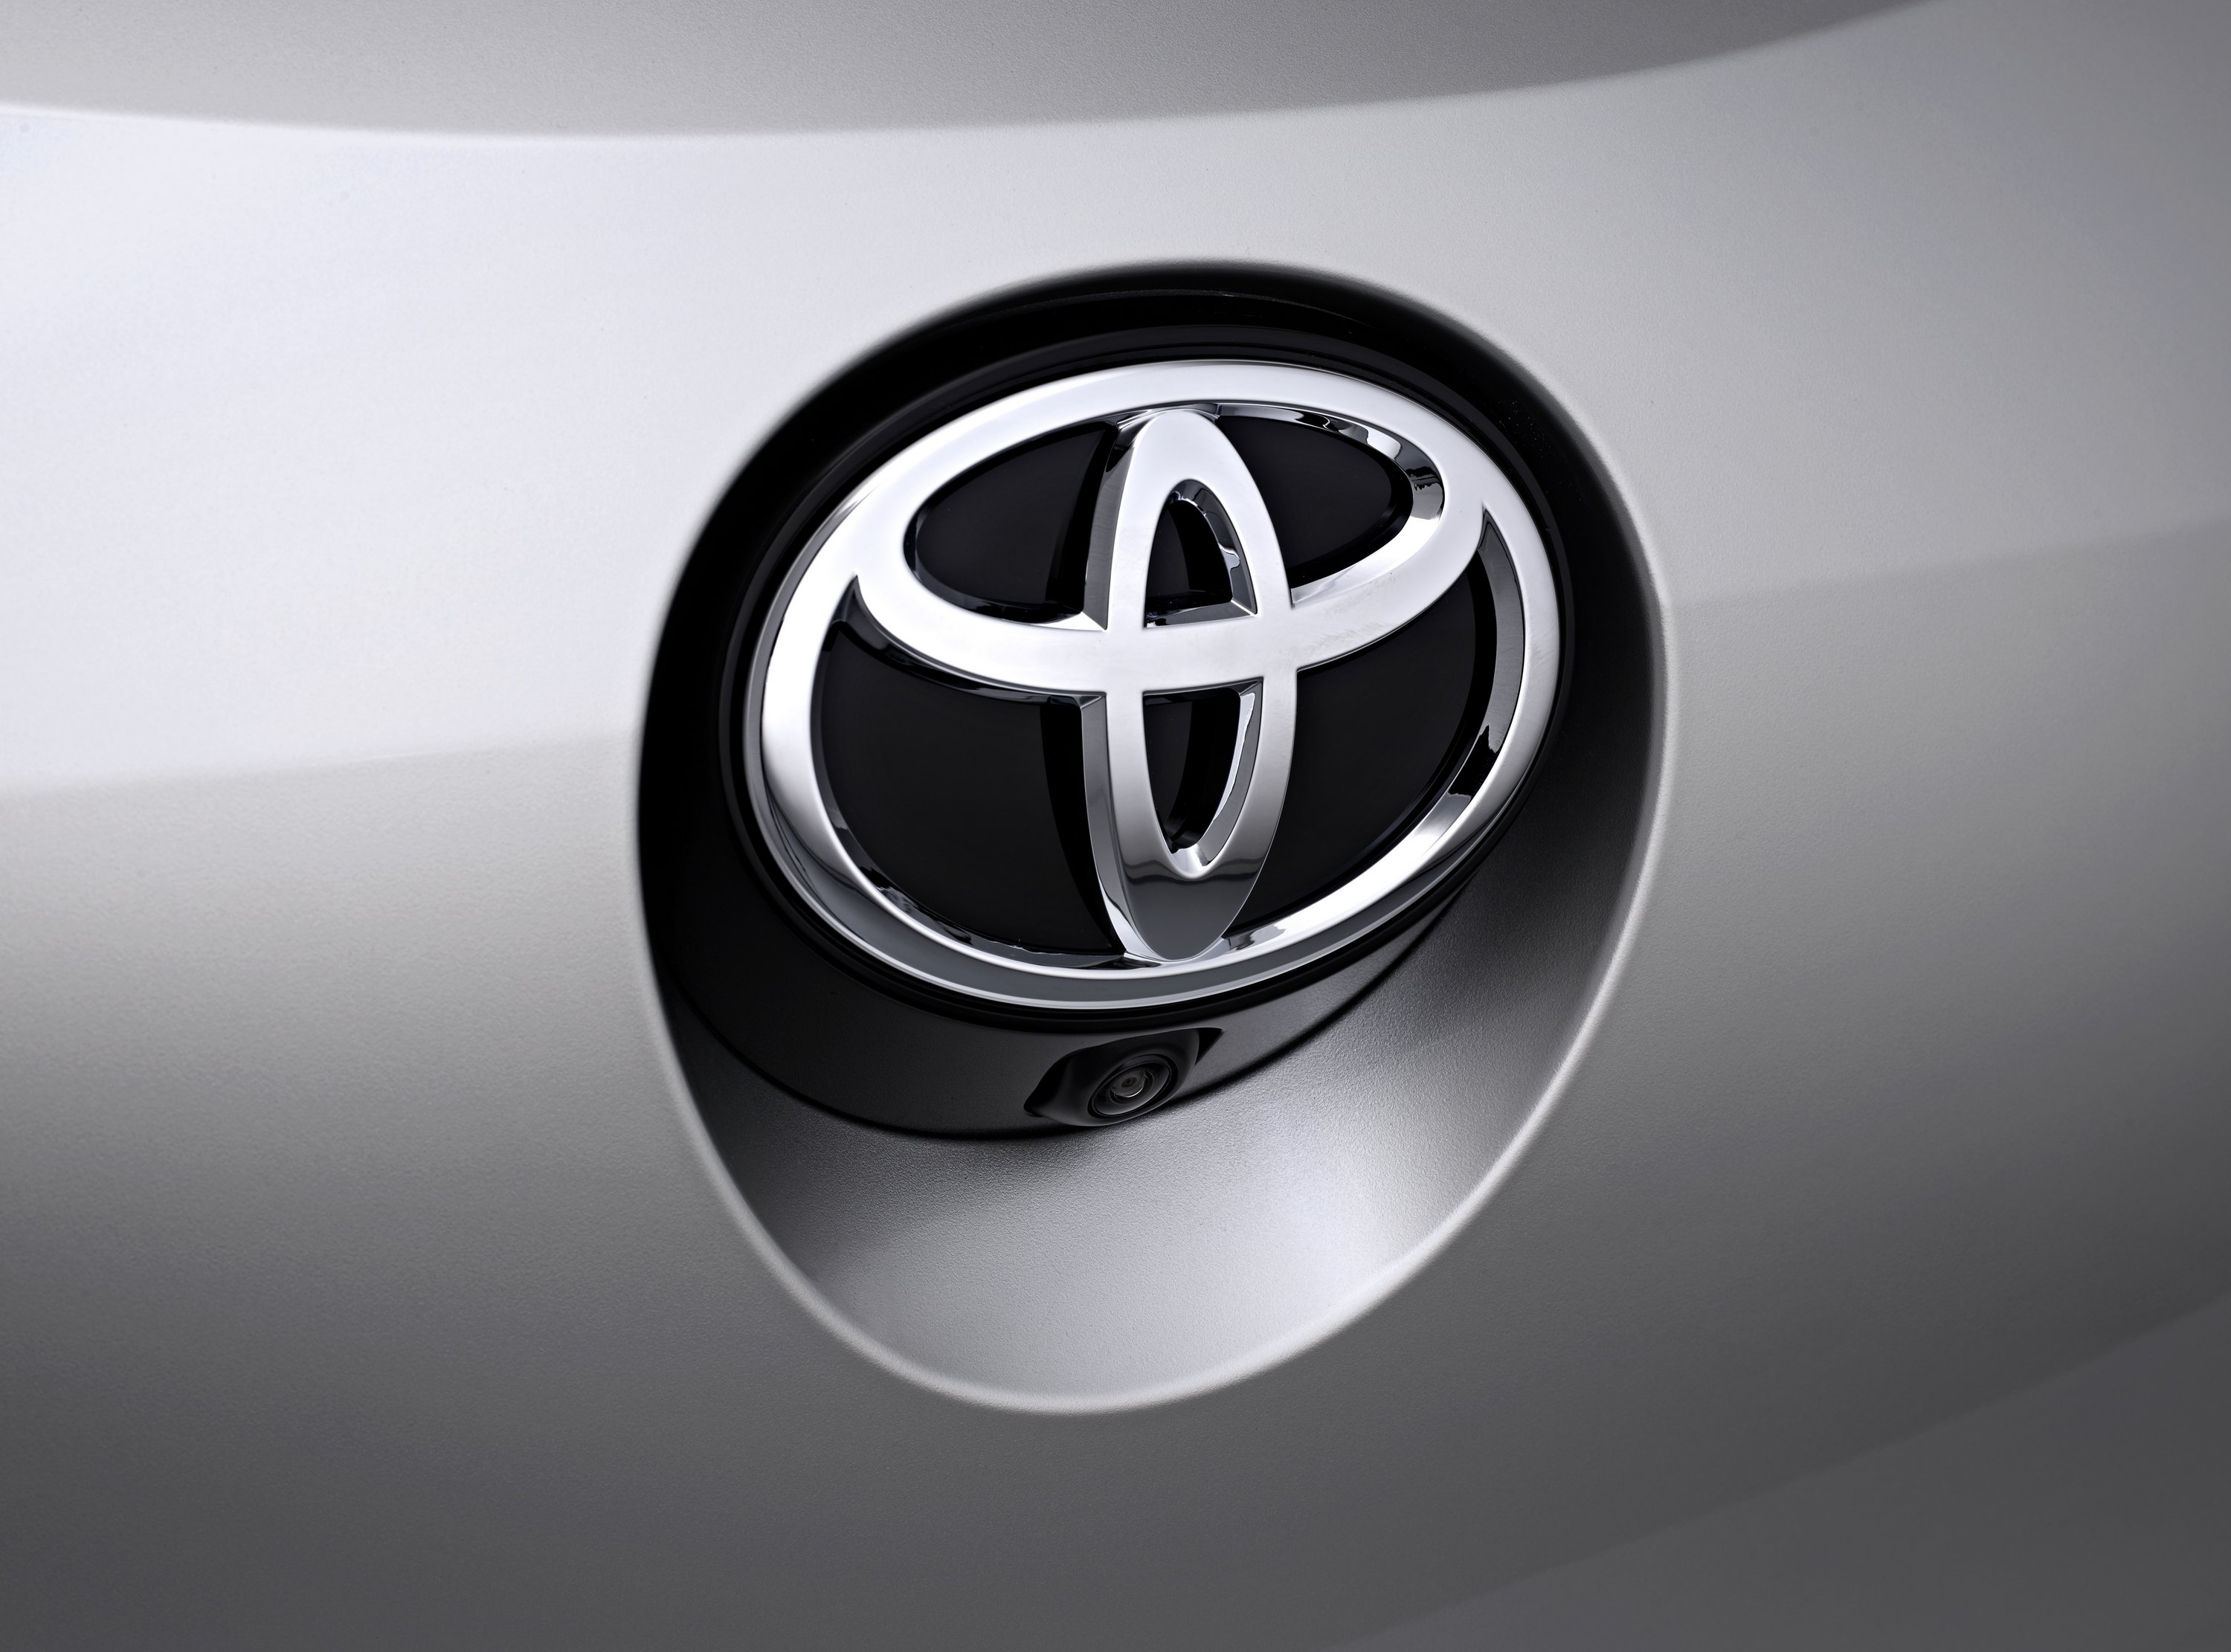 Izmosabbak lesznek a Toyota hibridjei 21